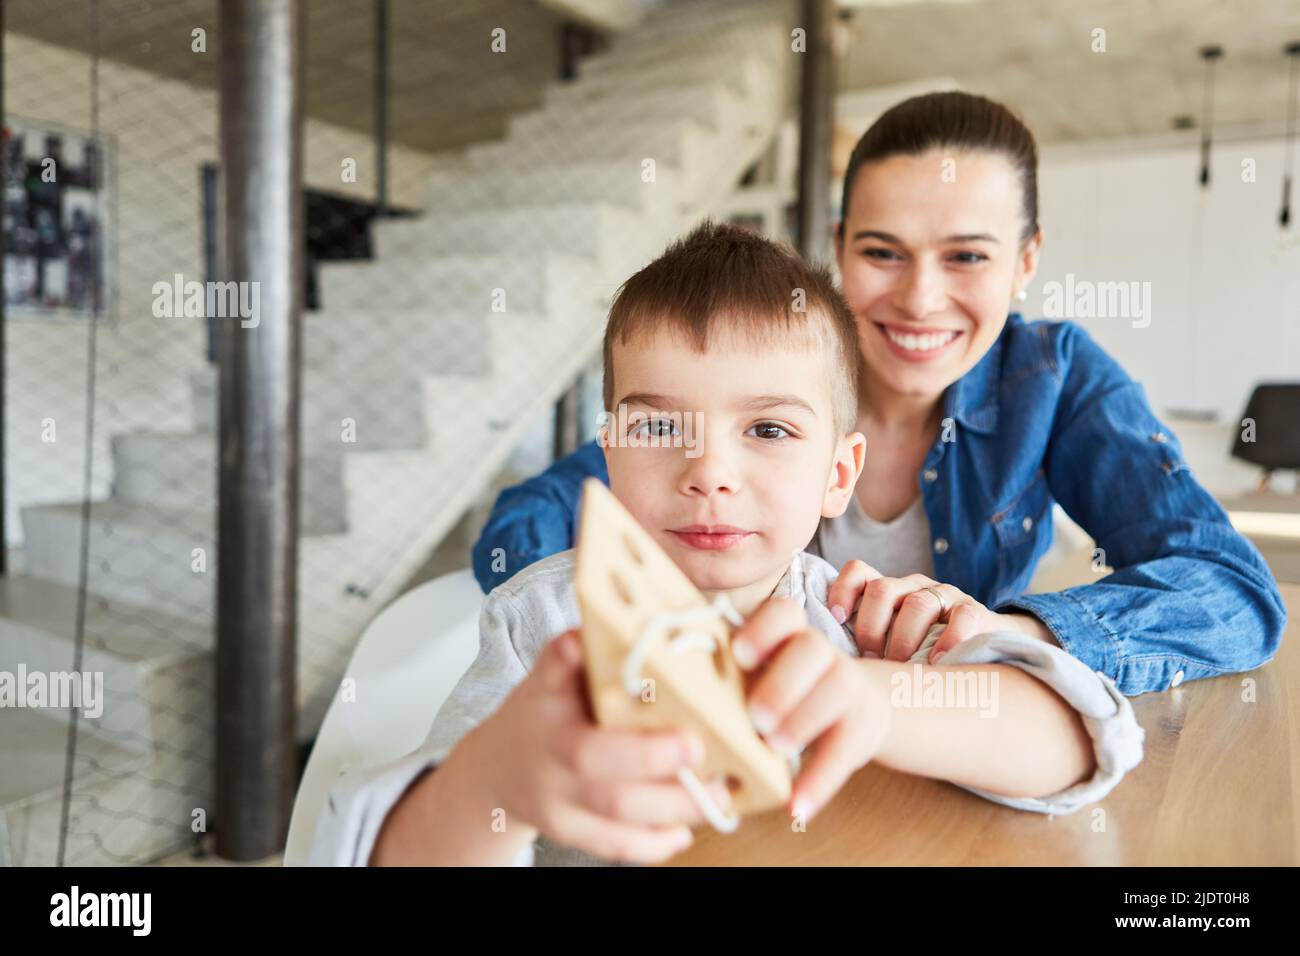 Das Kind zeigt stolz einen hölzernen Threading Block als ein motorisches Lernspiel mit der Mutter im Hintergrund Stockfoto